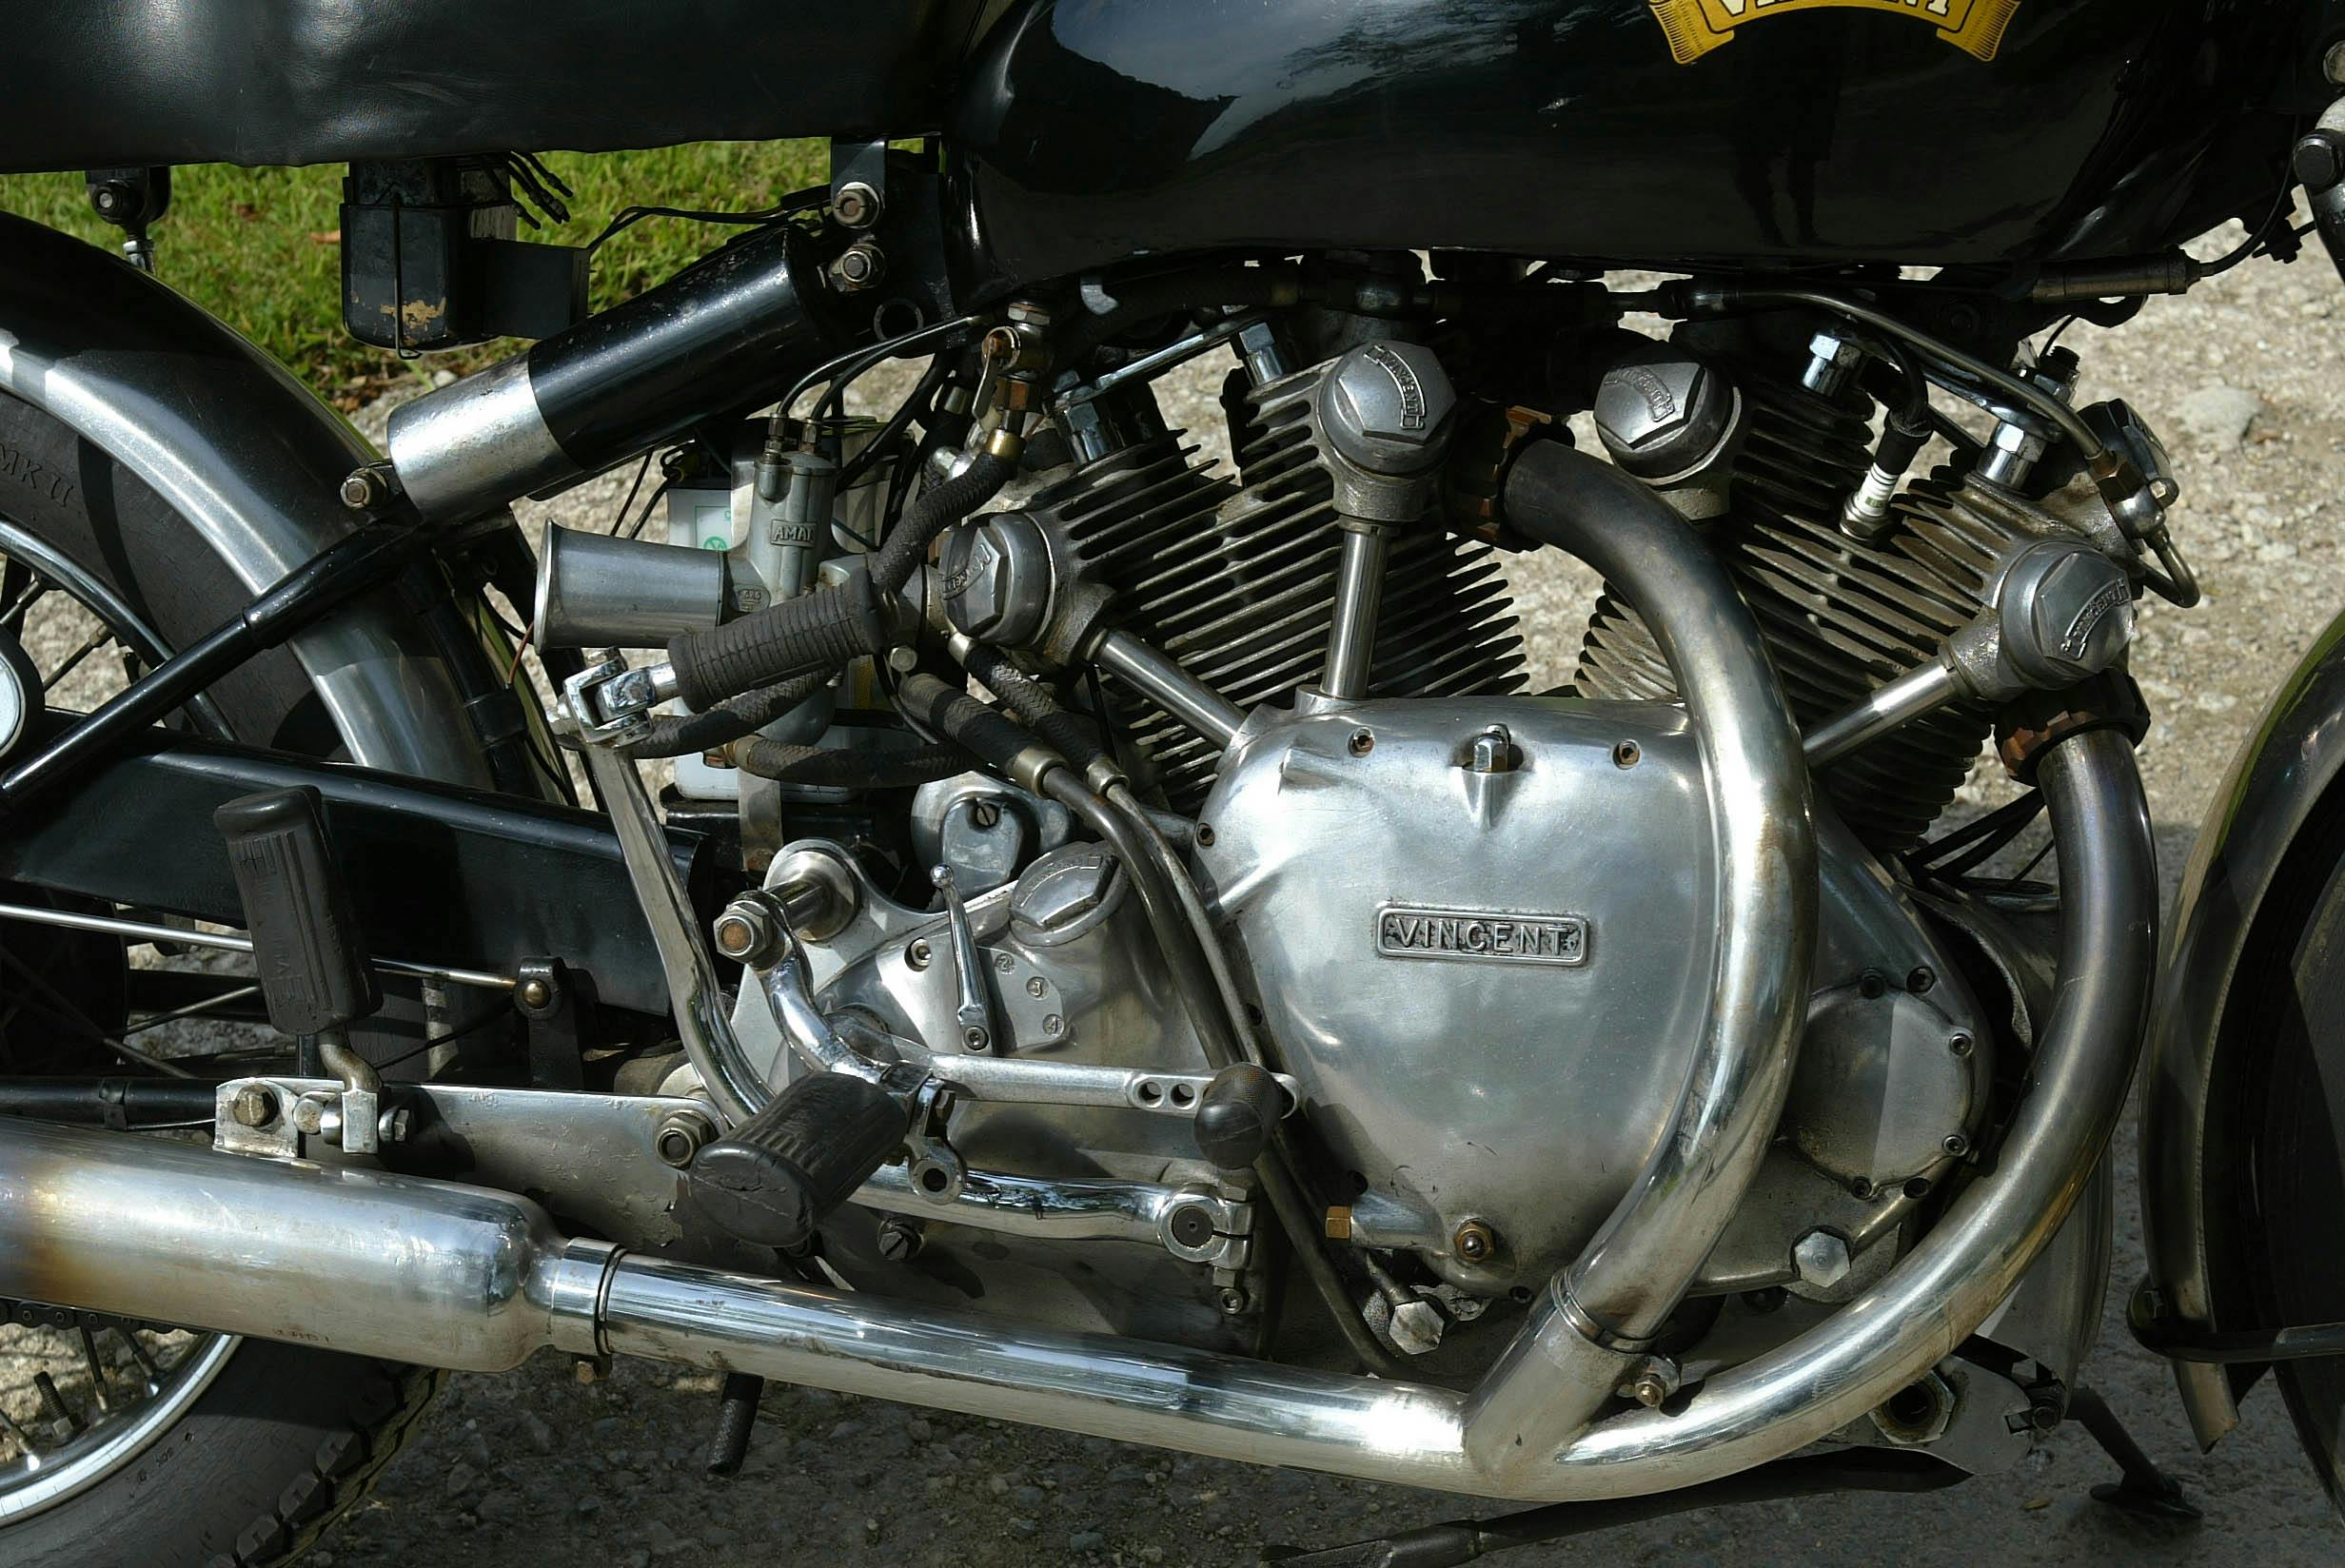 Vincent Rapide engine